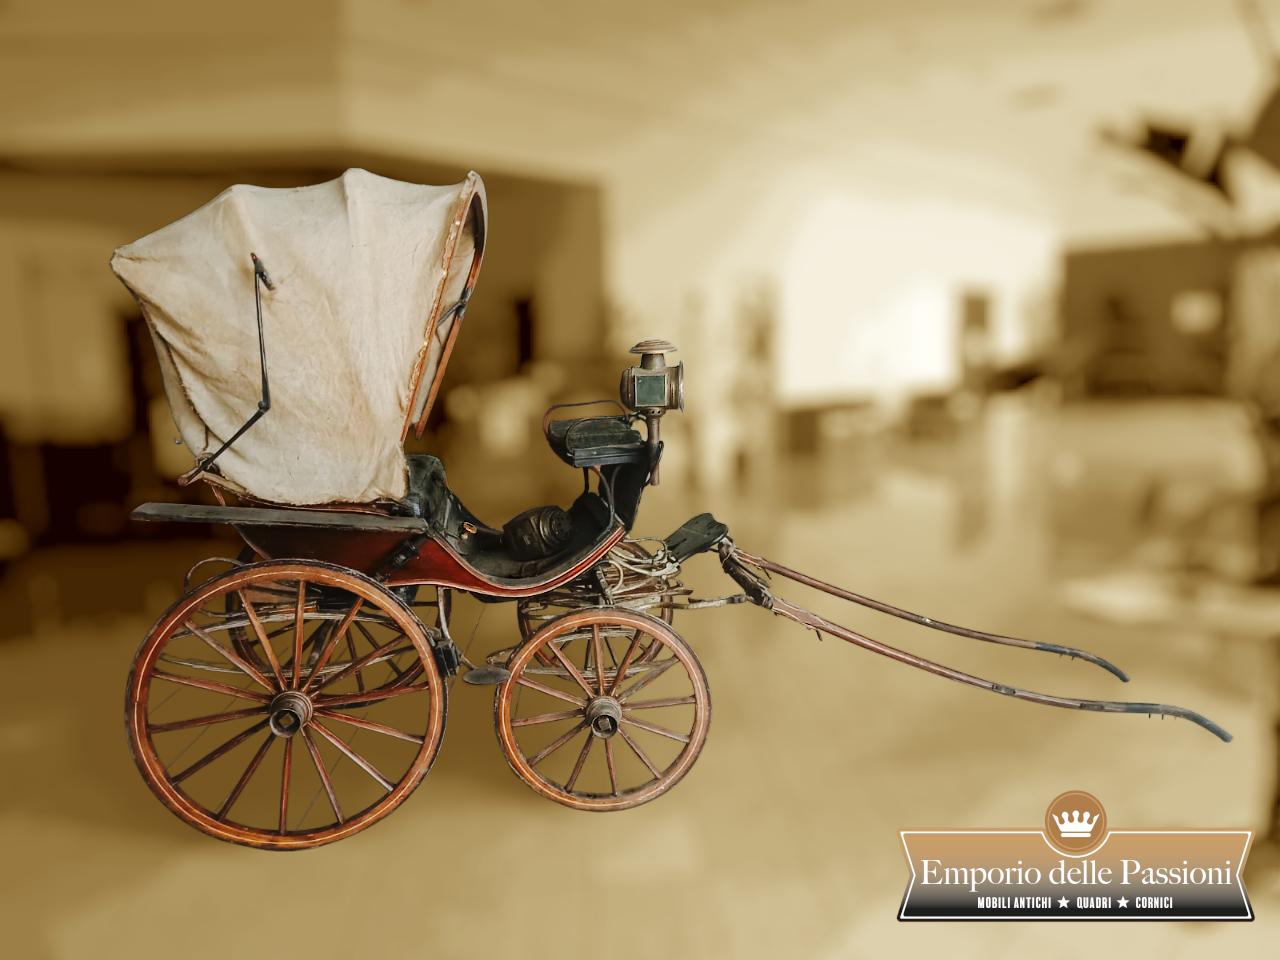 Voiture italienne originale datant d'environ 1870-80.
Voiture à quatre roues équipée d'un grand soufflet en toile pliable,
avec un siège à deux places pour les passagers et équipé d'un siège plus haut pour le cocher.
La banquette arrière est en cuir